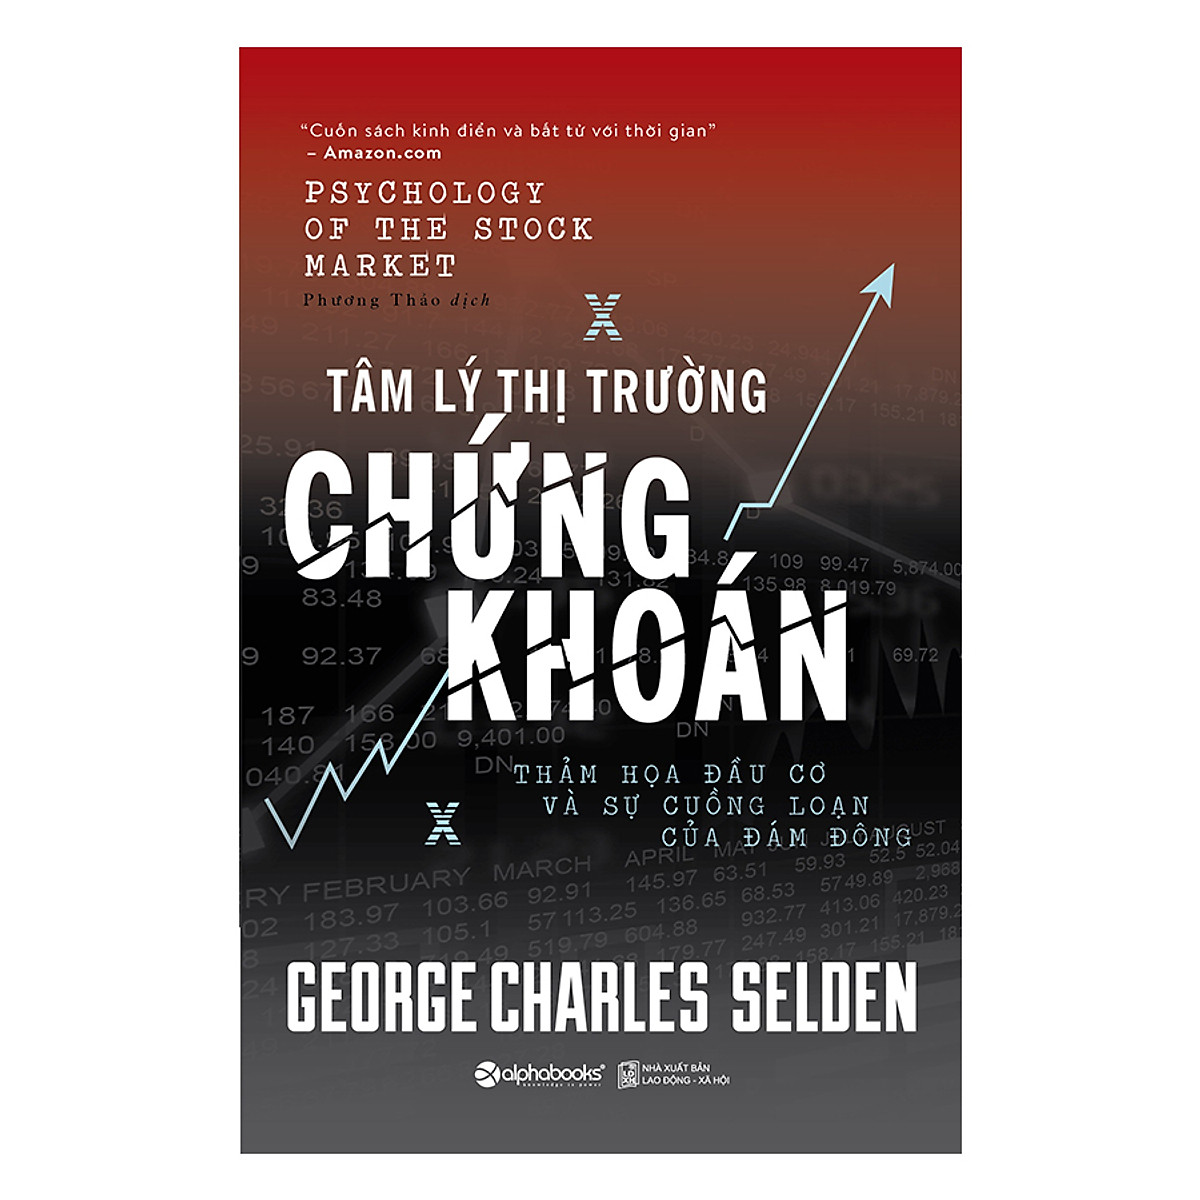 Tâm lý thị trường chứng khoán (Psychology of Stock Market) - George Charles Selden